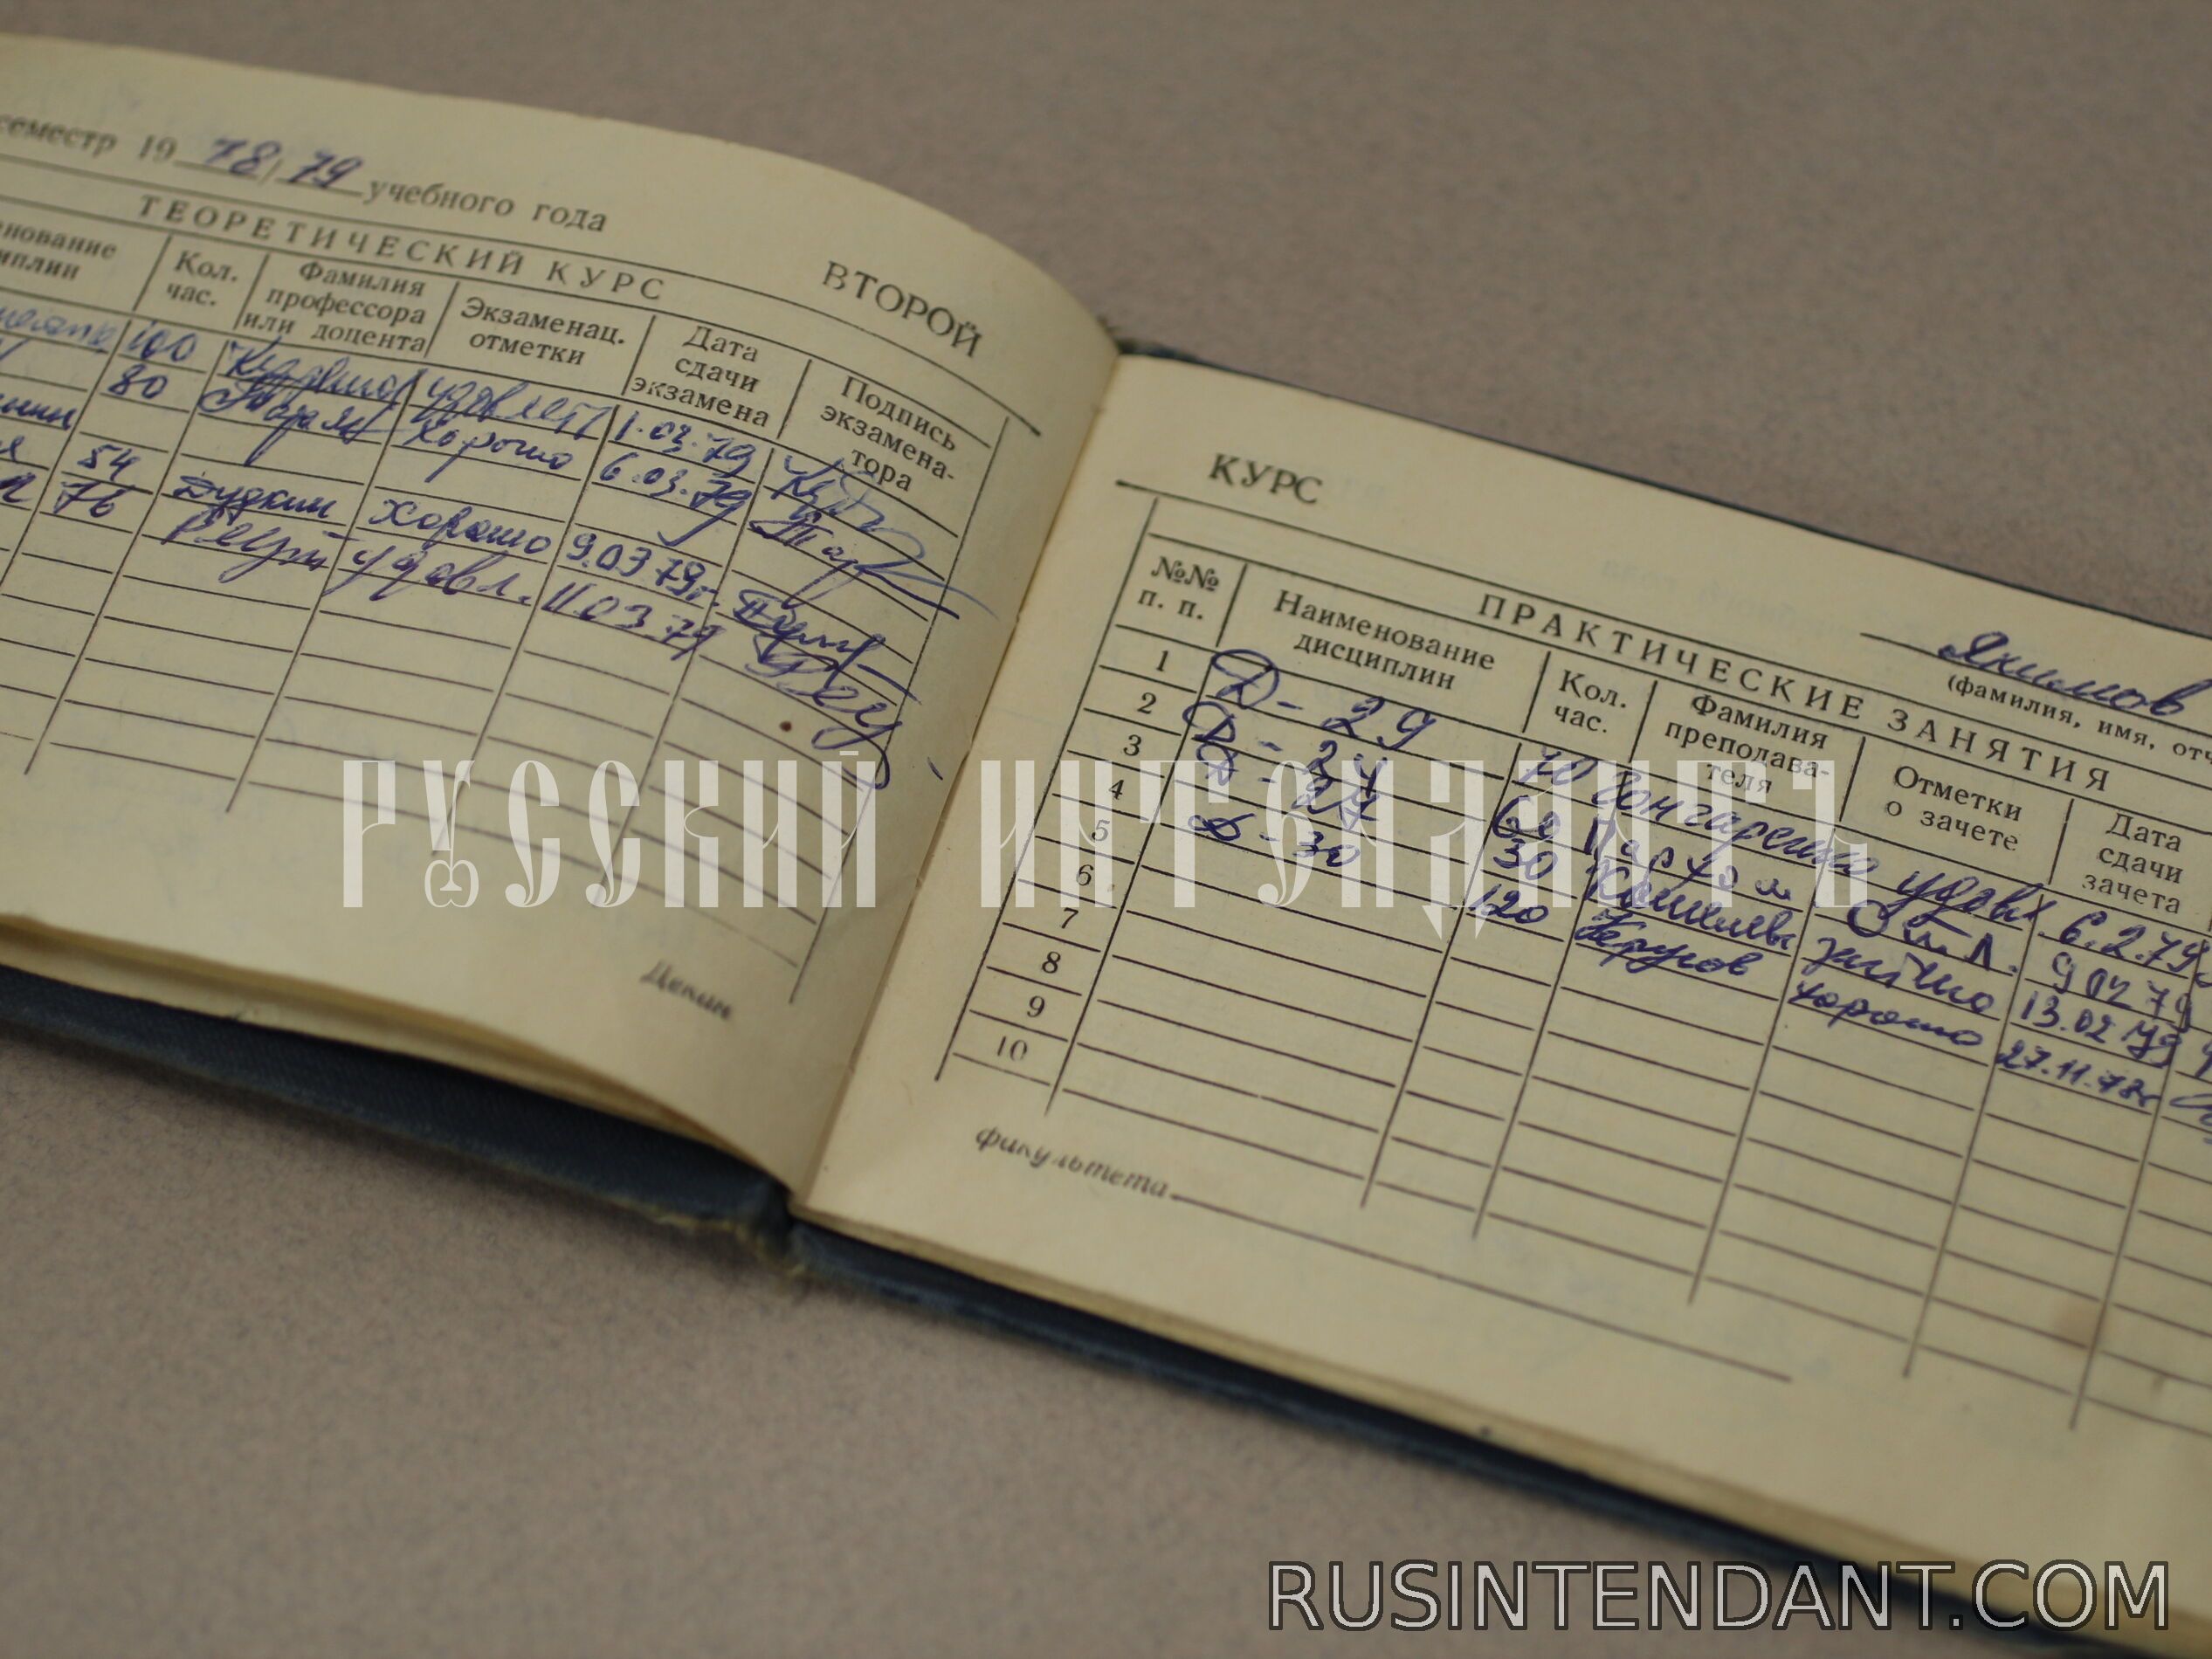 Фото 8: Знак Высшего военного училища СССР 